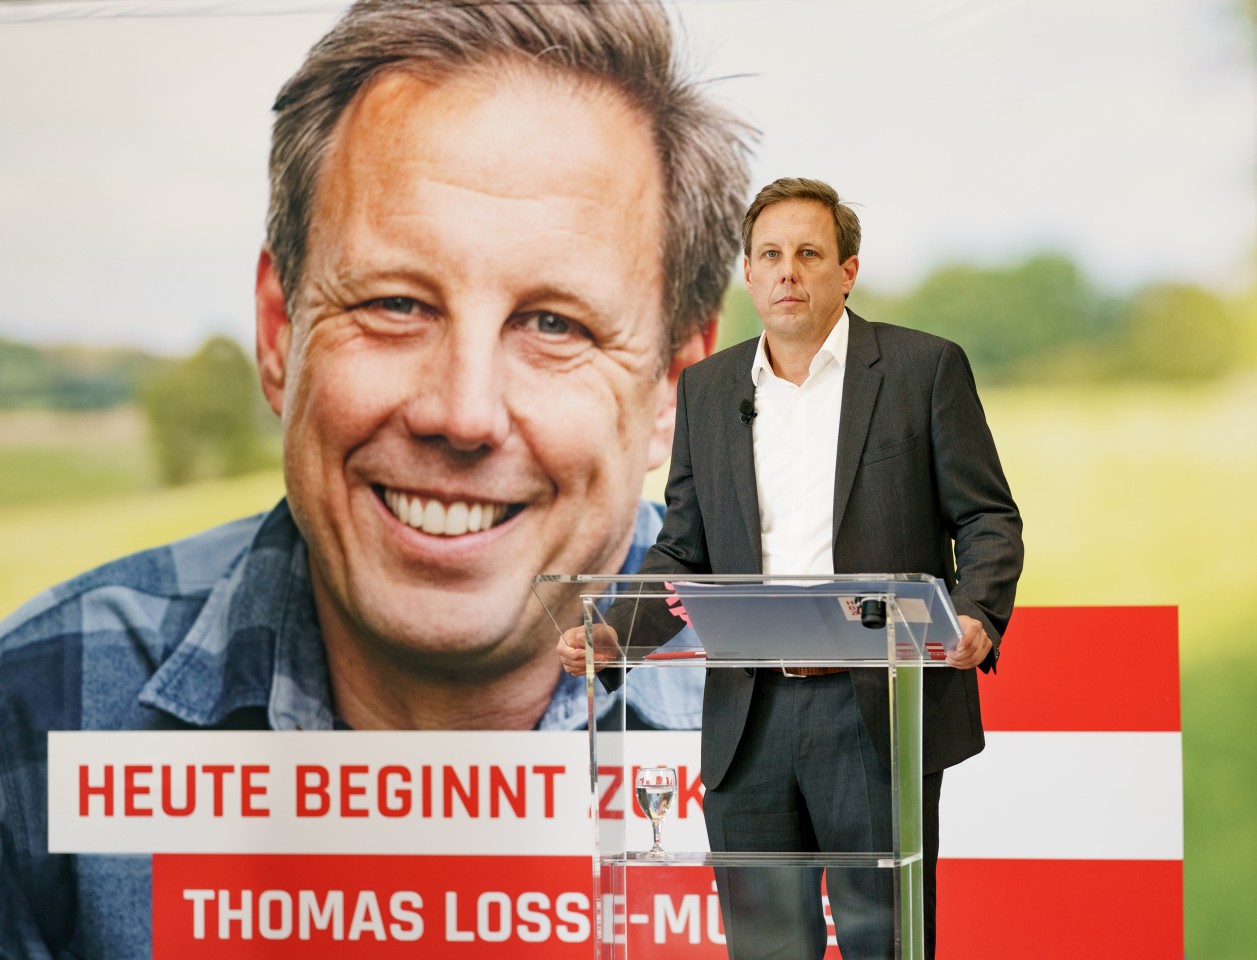  Thomas Losse-Müller (SPD), Spitzenkandidat der SPD für die kommende Landtagswahl 2022 in Schleswig-Holstein, sprach bei der Bekanntgabe seiner Kandidatur im August 2021.